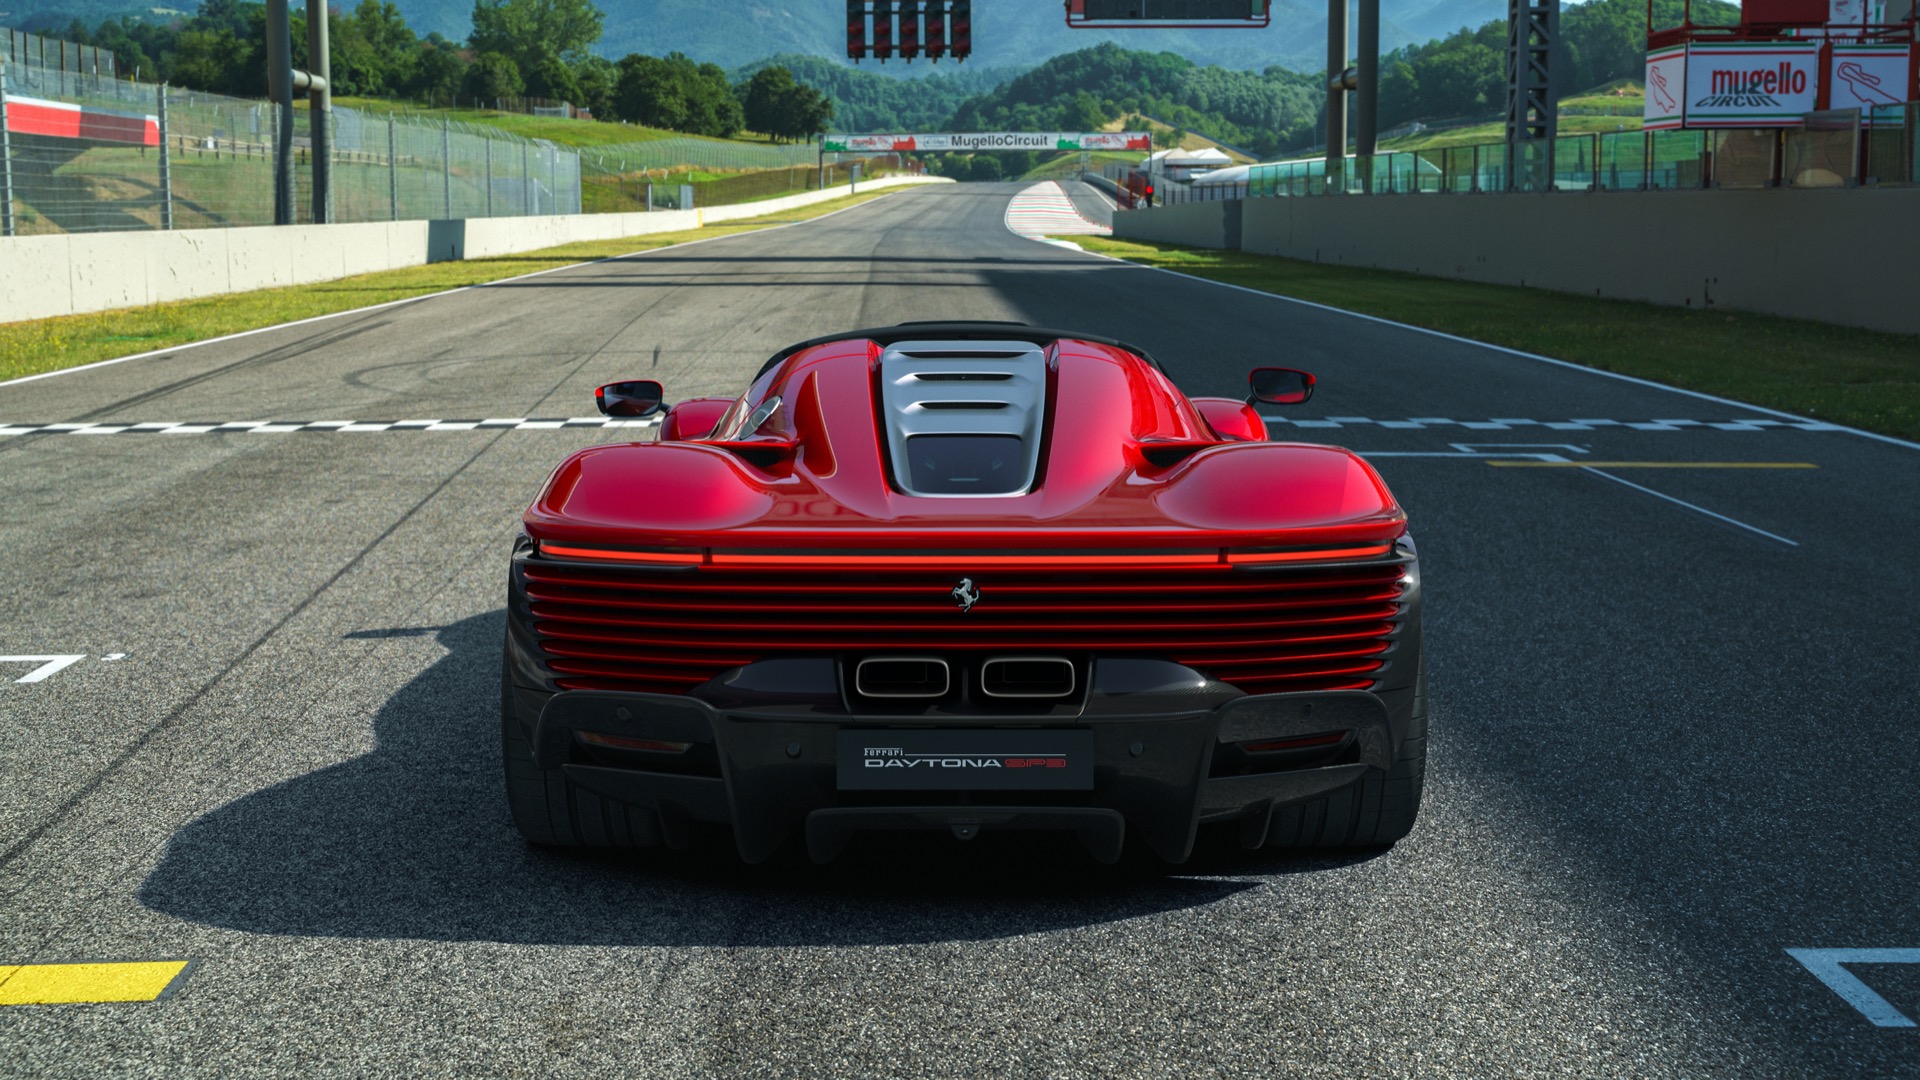 Ferrari Daytona Sp3 4